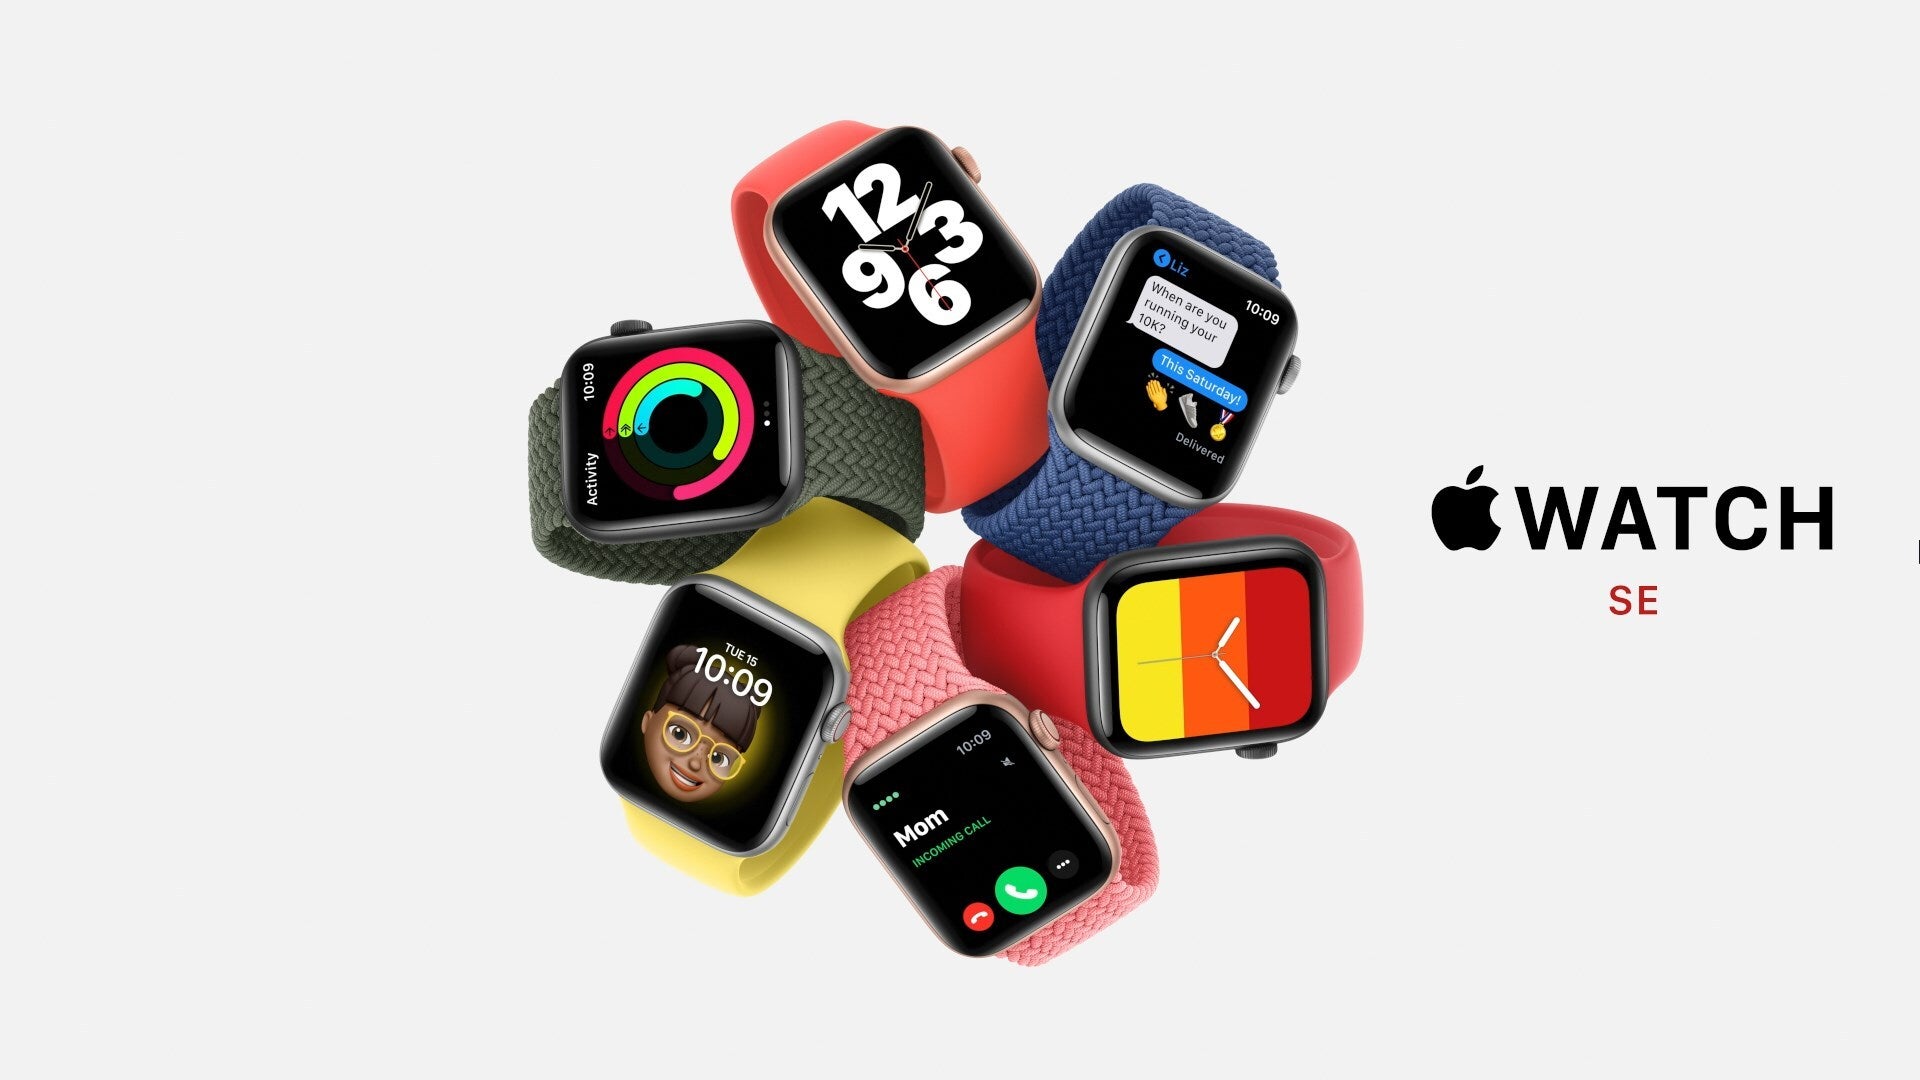 Apple Watch SE - Apple Watch SE vs Apple Watch Series 3